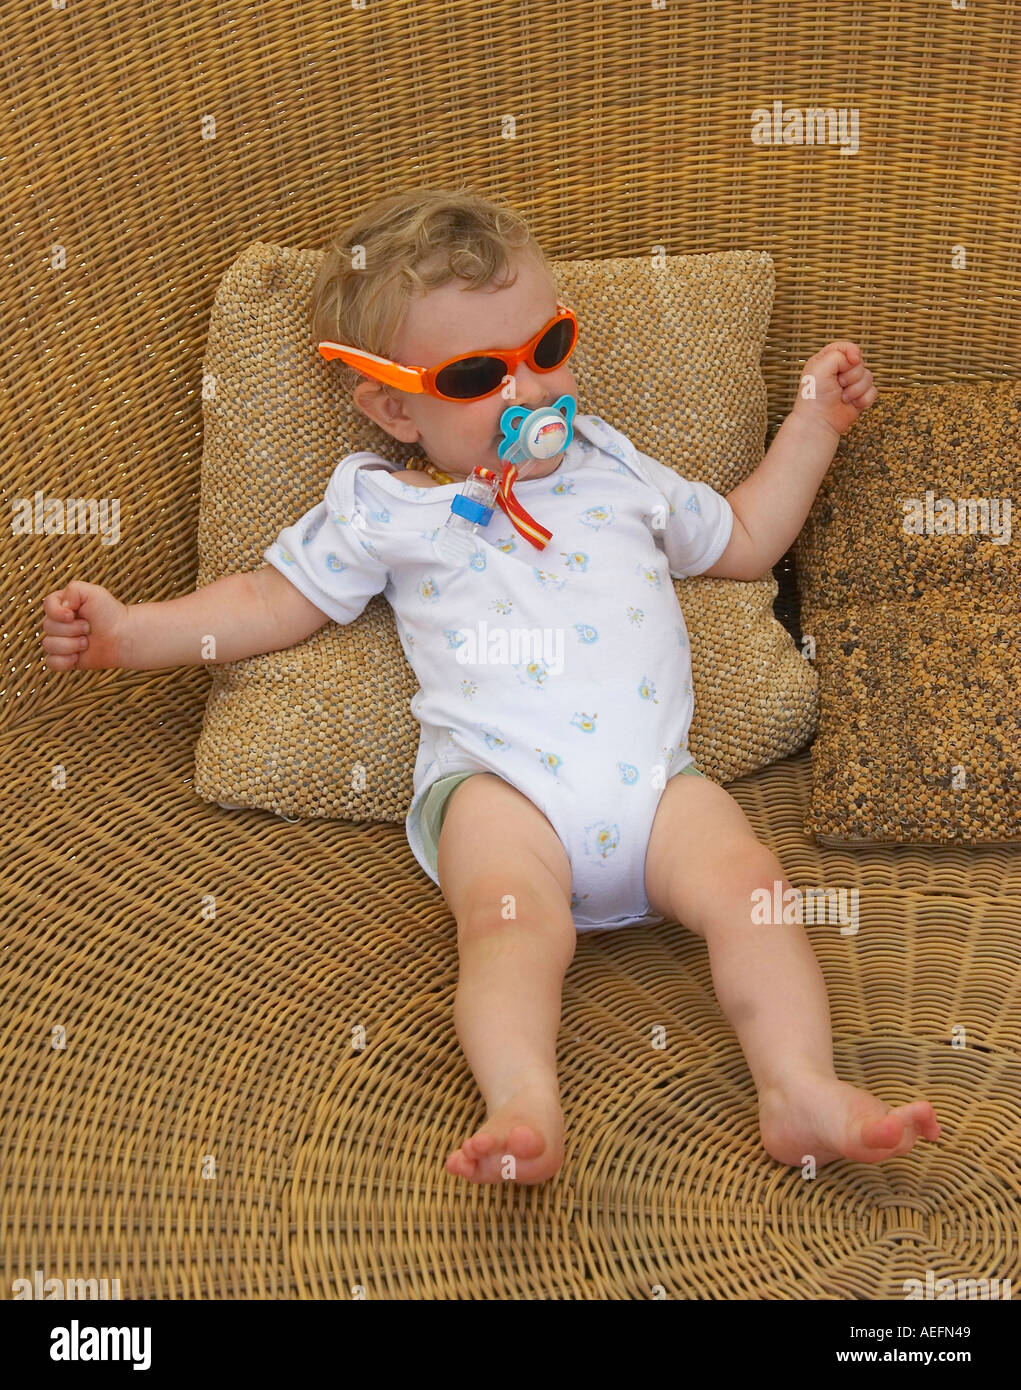 coole Baby-sitter in riesigen Rattan Sitz Stockfoto